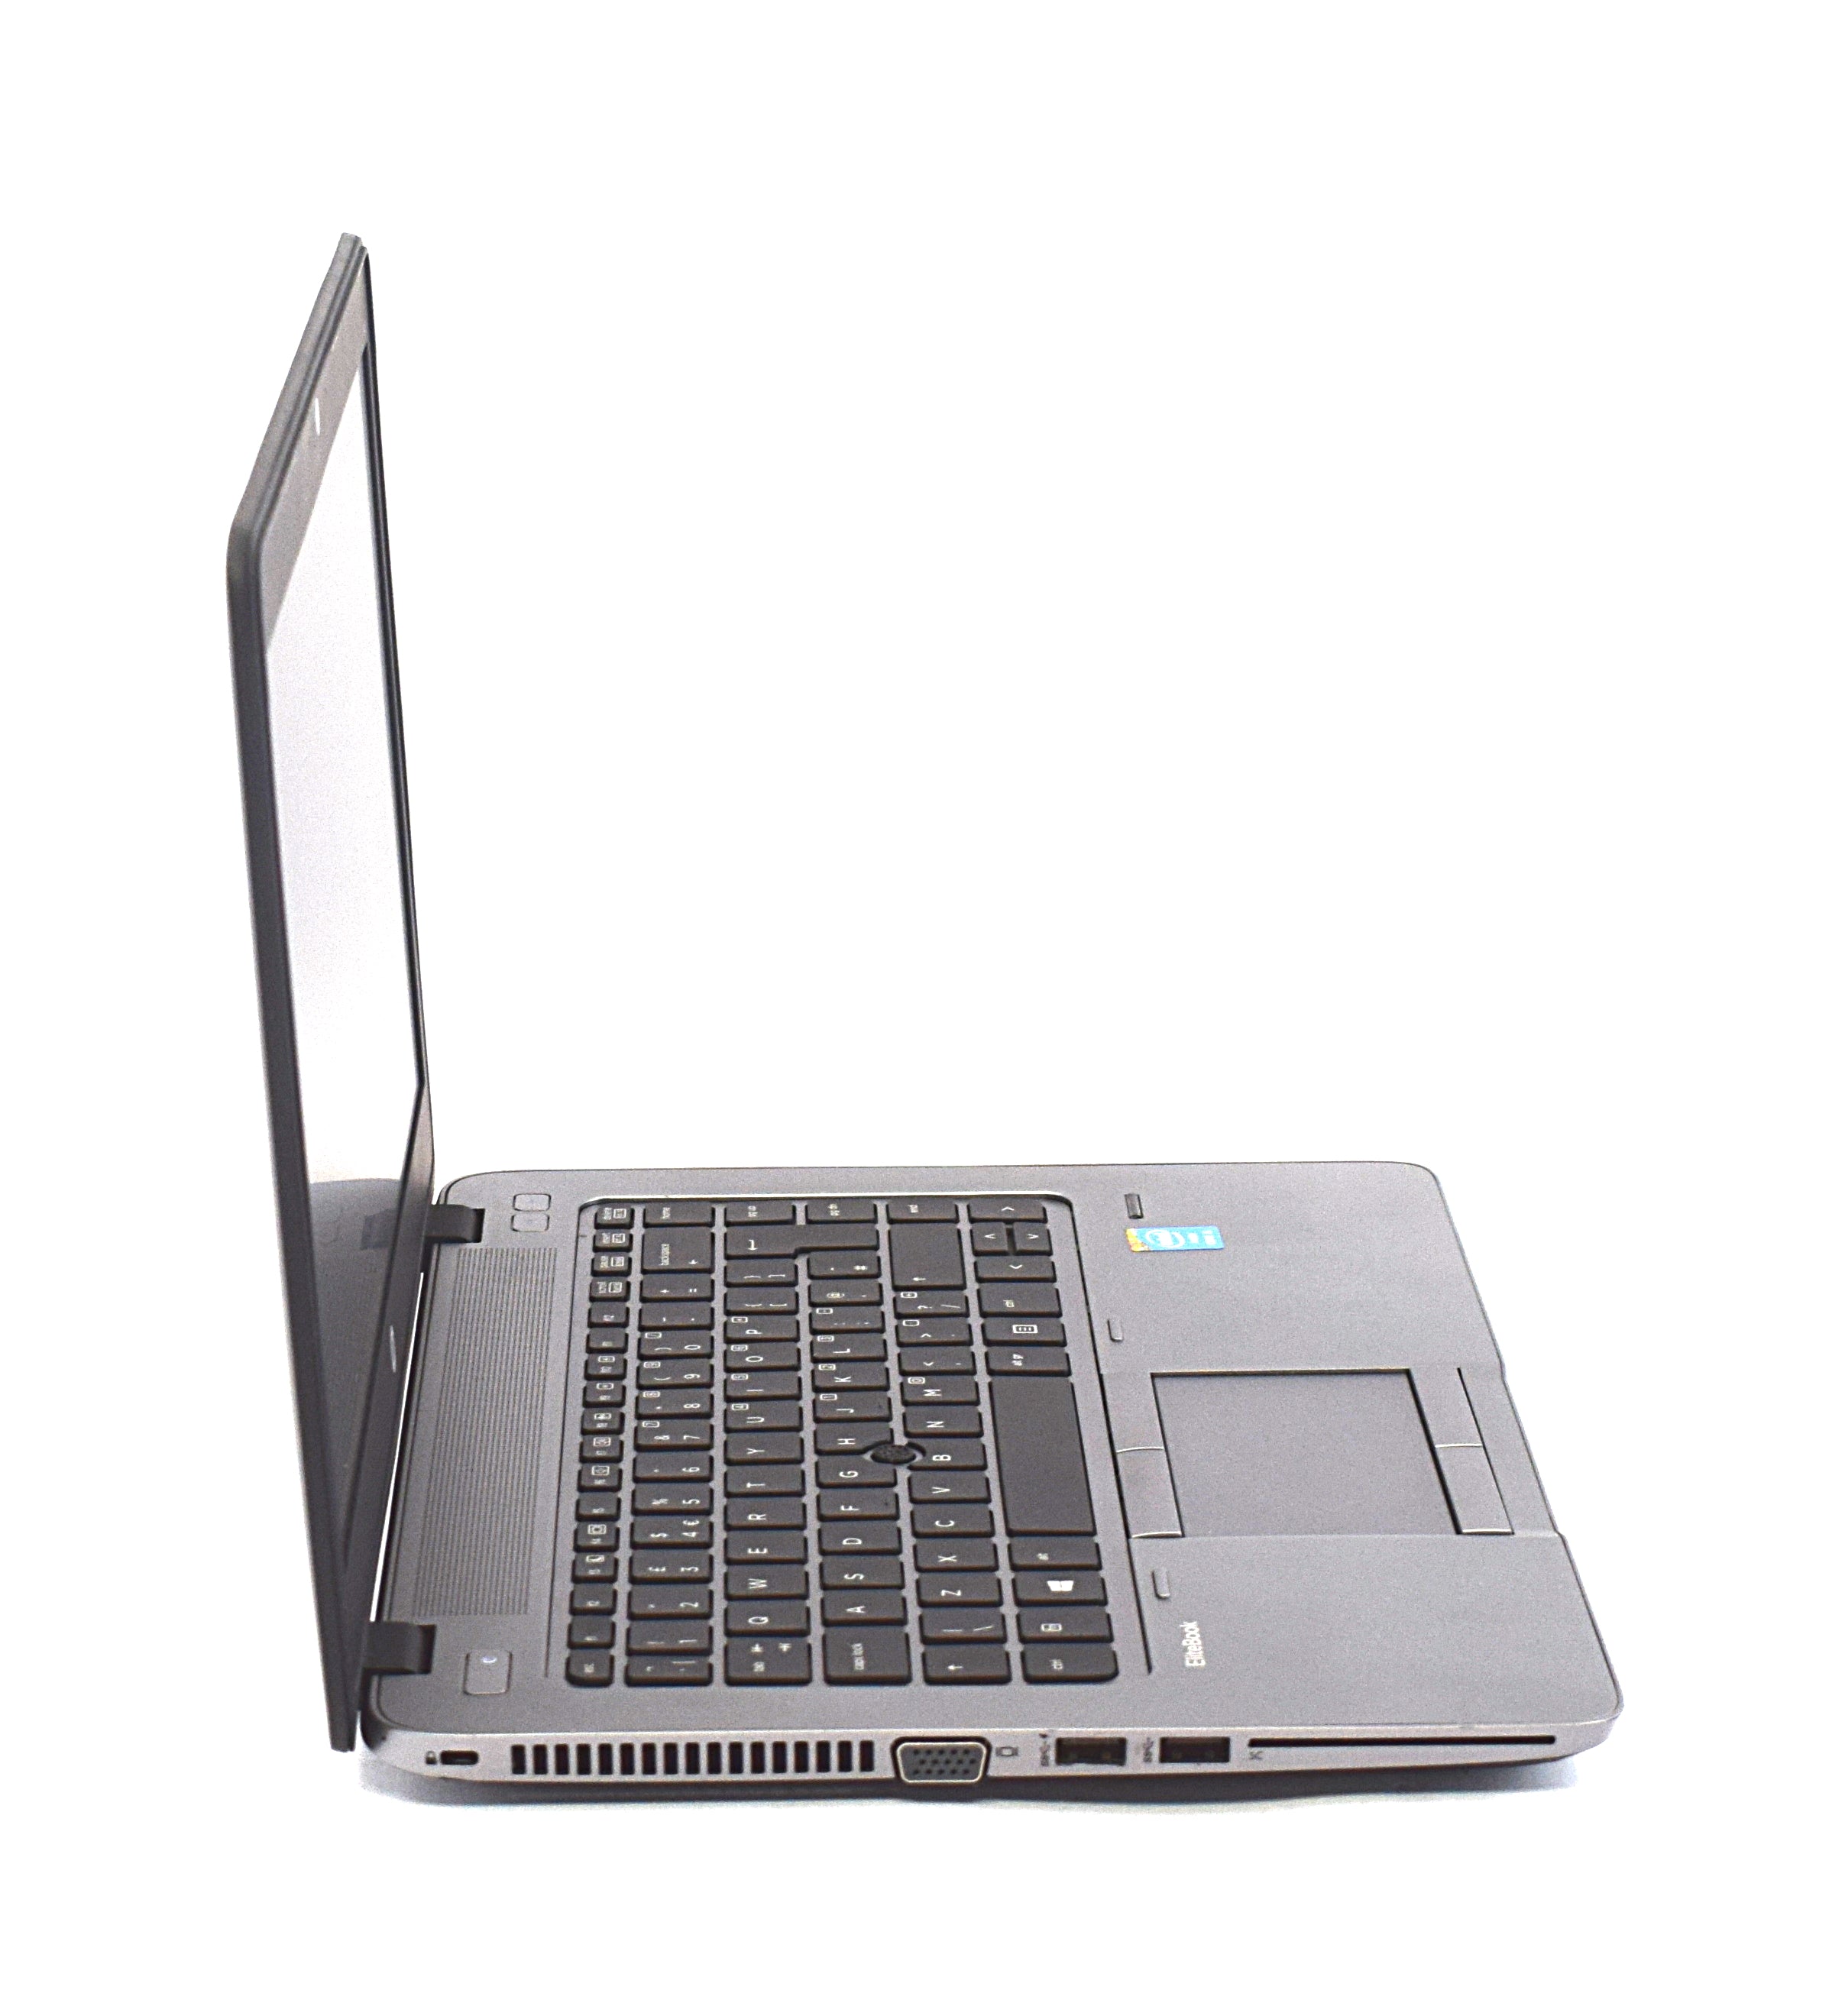 HP EliteBook 840 G1 Laptop, 14" Core i5 4th Gen, 8GB RAM, 128GB SSD